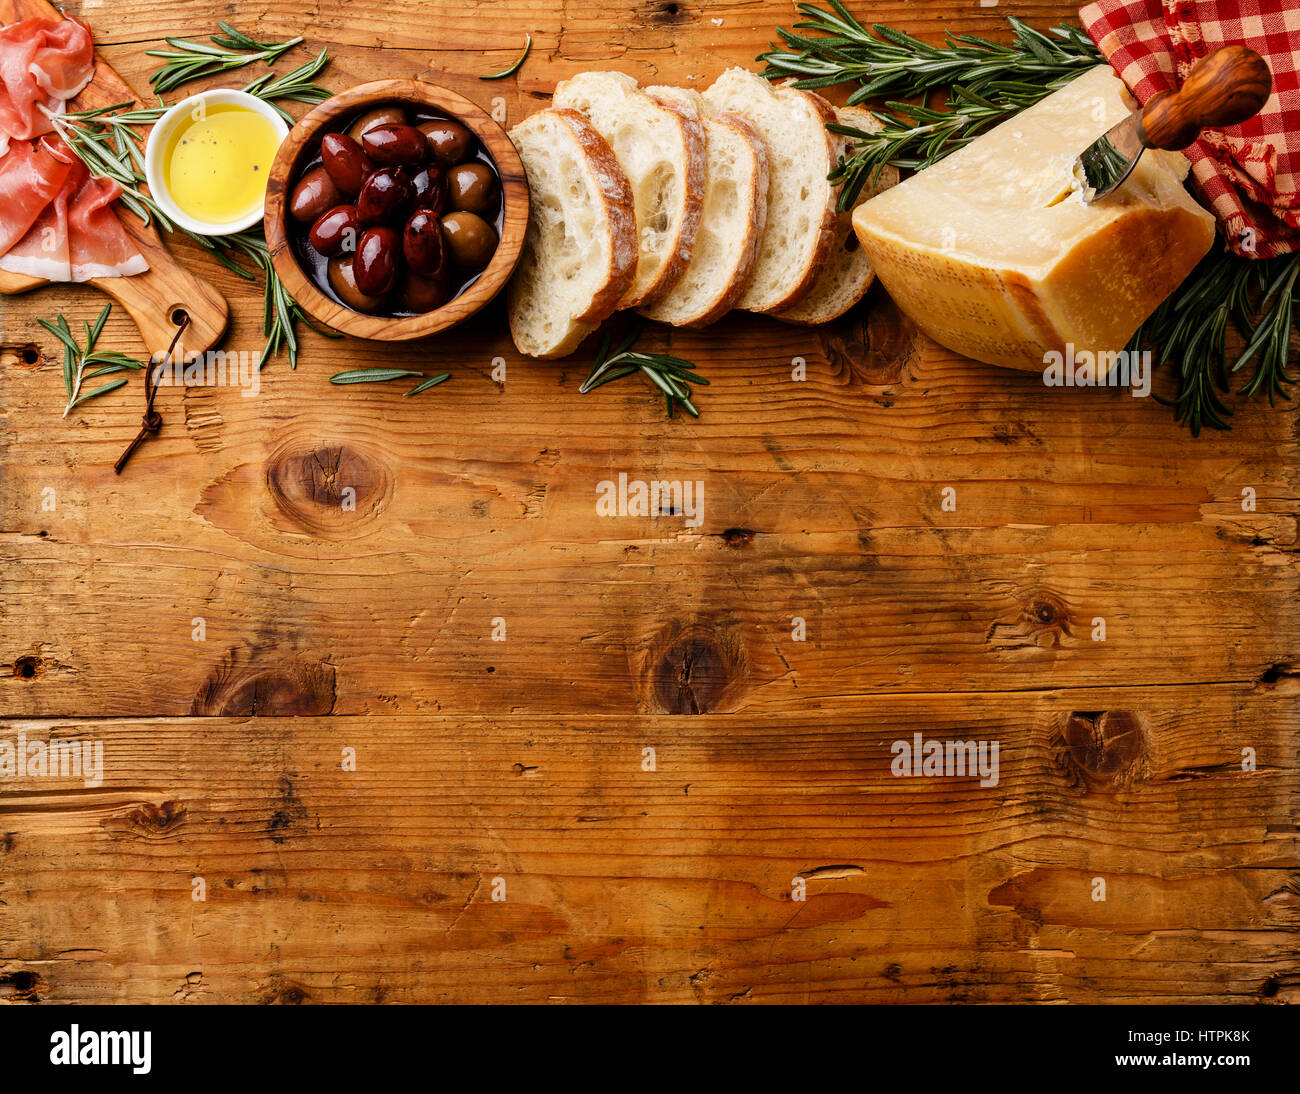 Comida italiana con jamón, rodajas de pan ciabatta, parmesano y aceitunas sobre fondo de madera espacio de copia Foto de stock